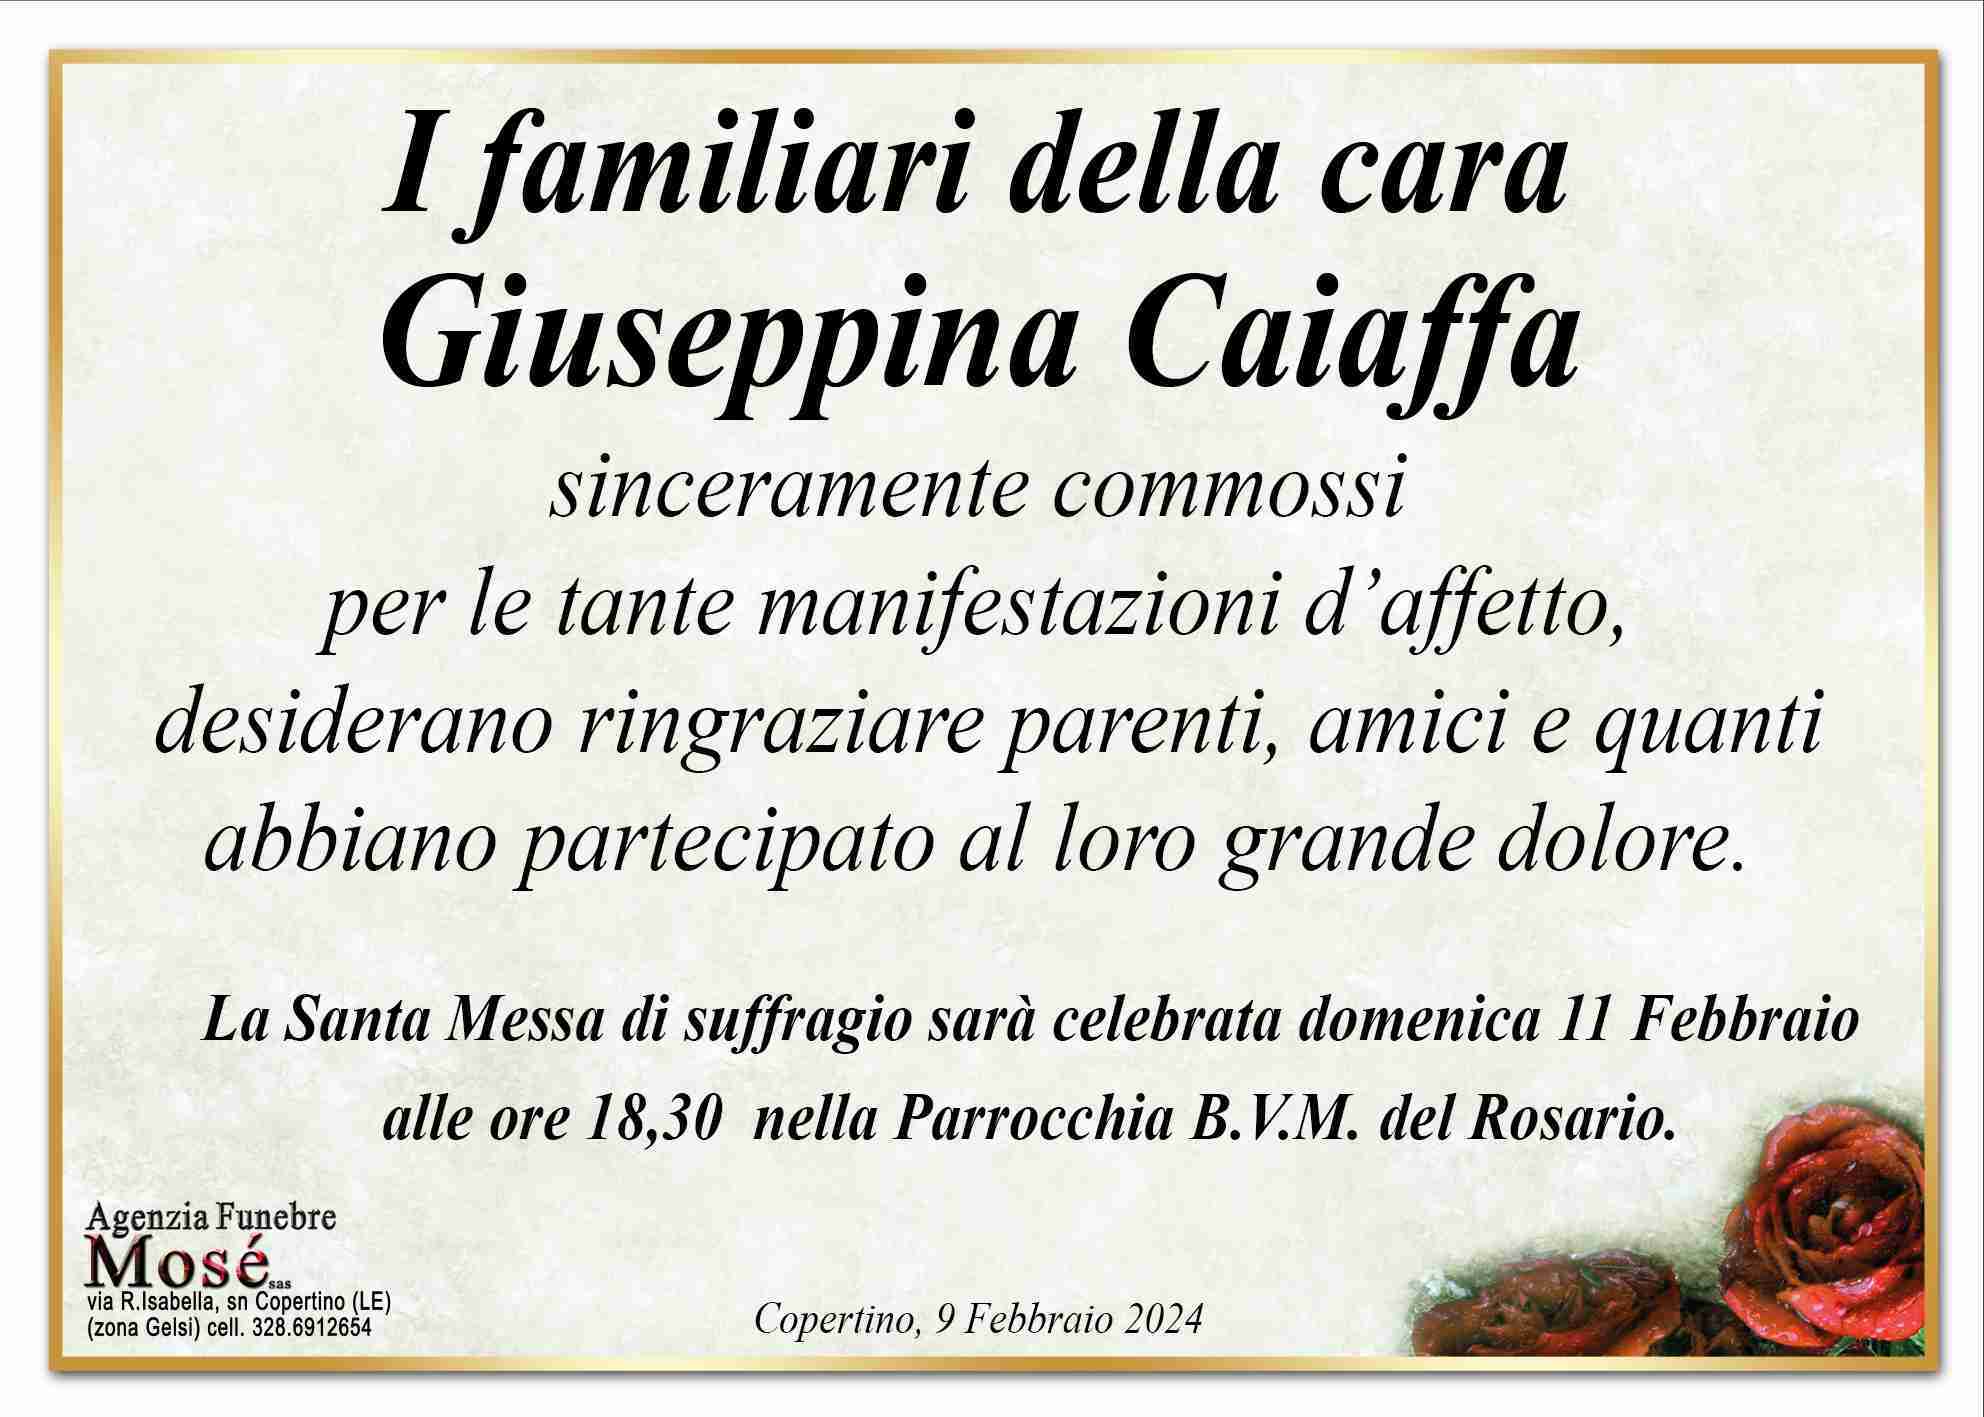 Giuseppina Caiaffa